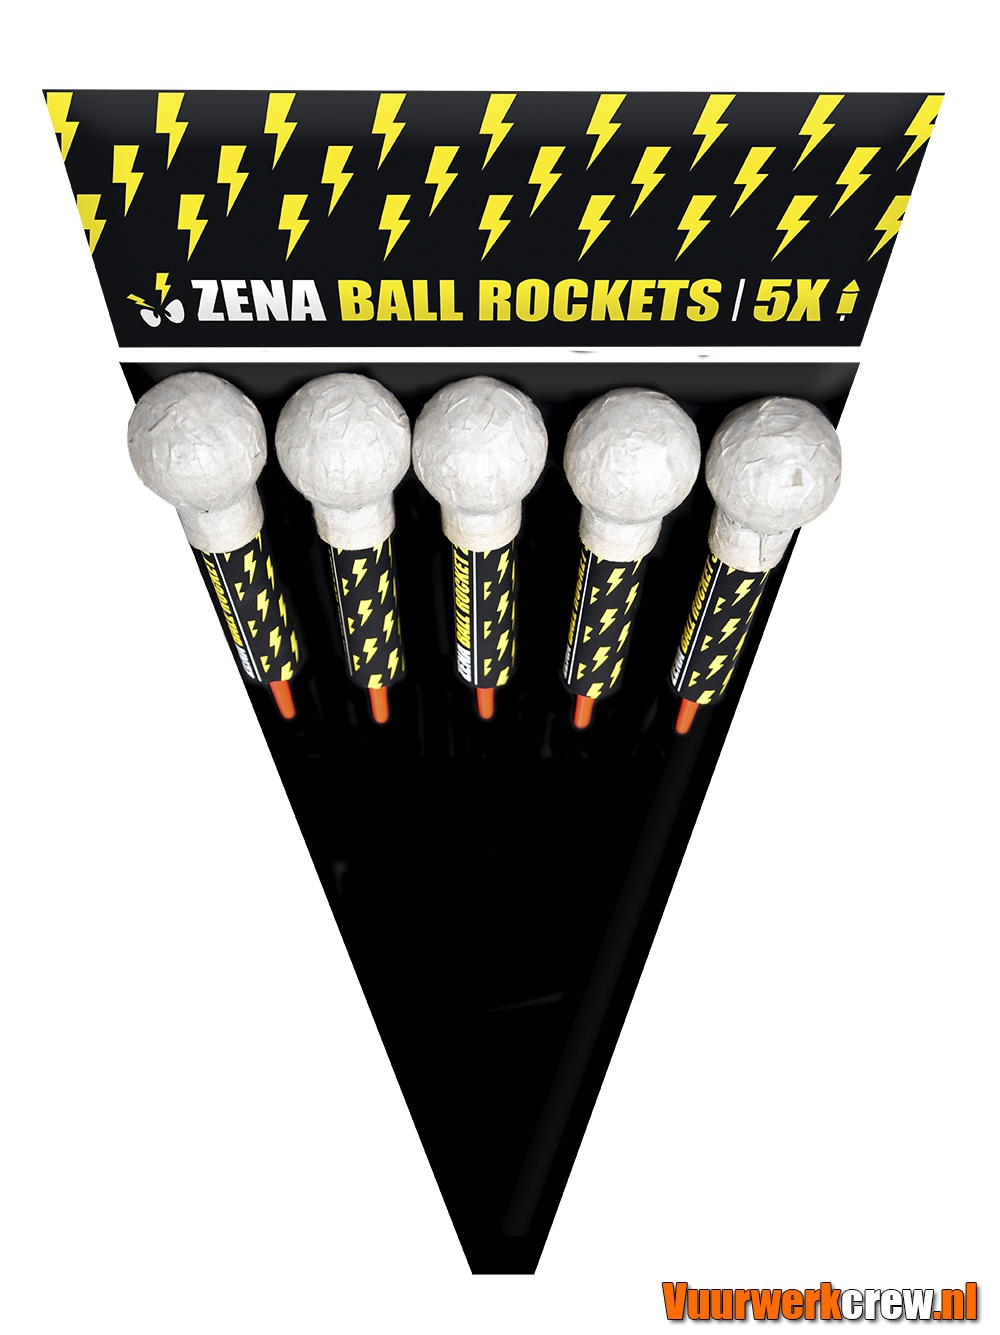 01583 Zena ball rockets kopiëren